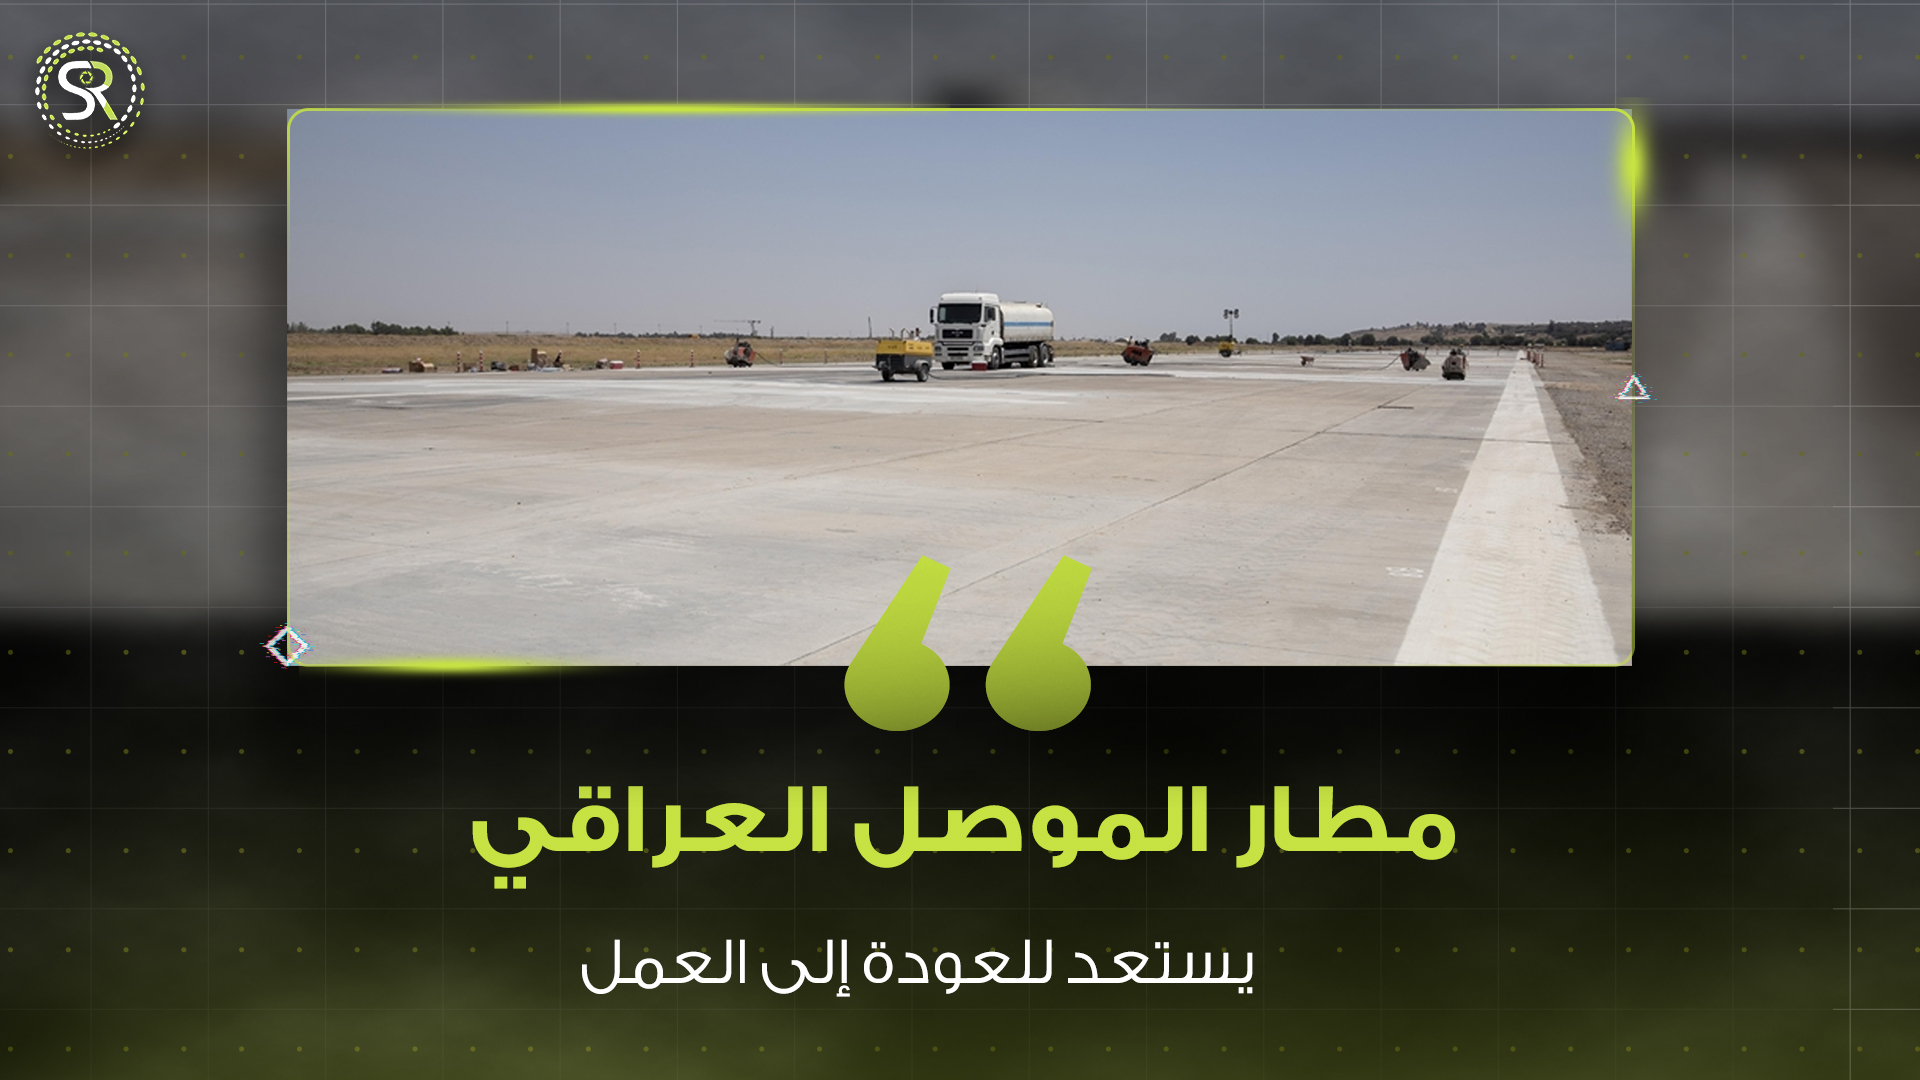 محافظة نينوى تستمر بإعادة تأهيل مطار الموصل